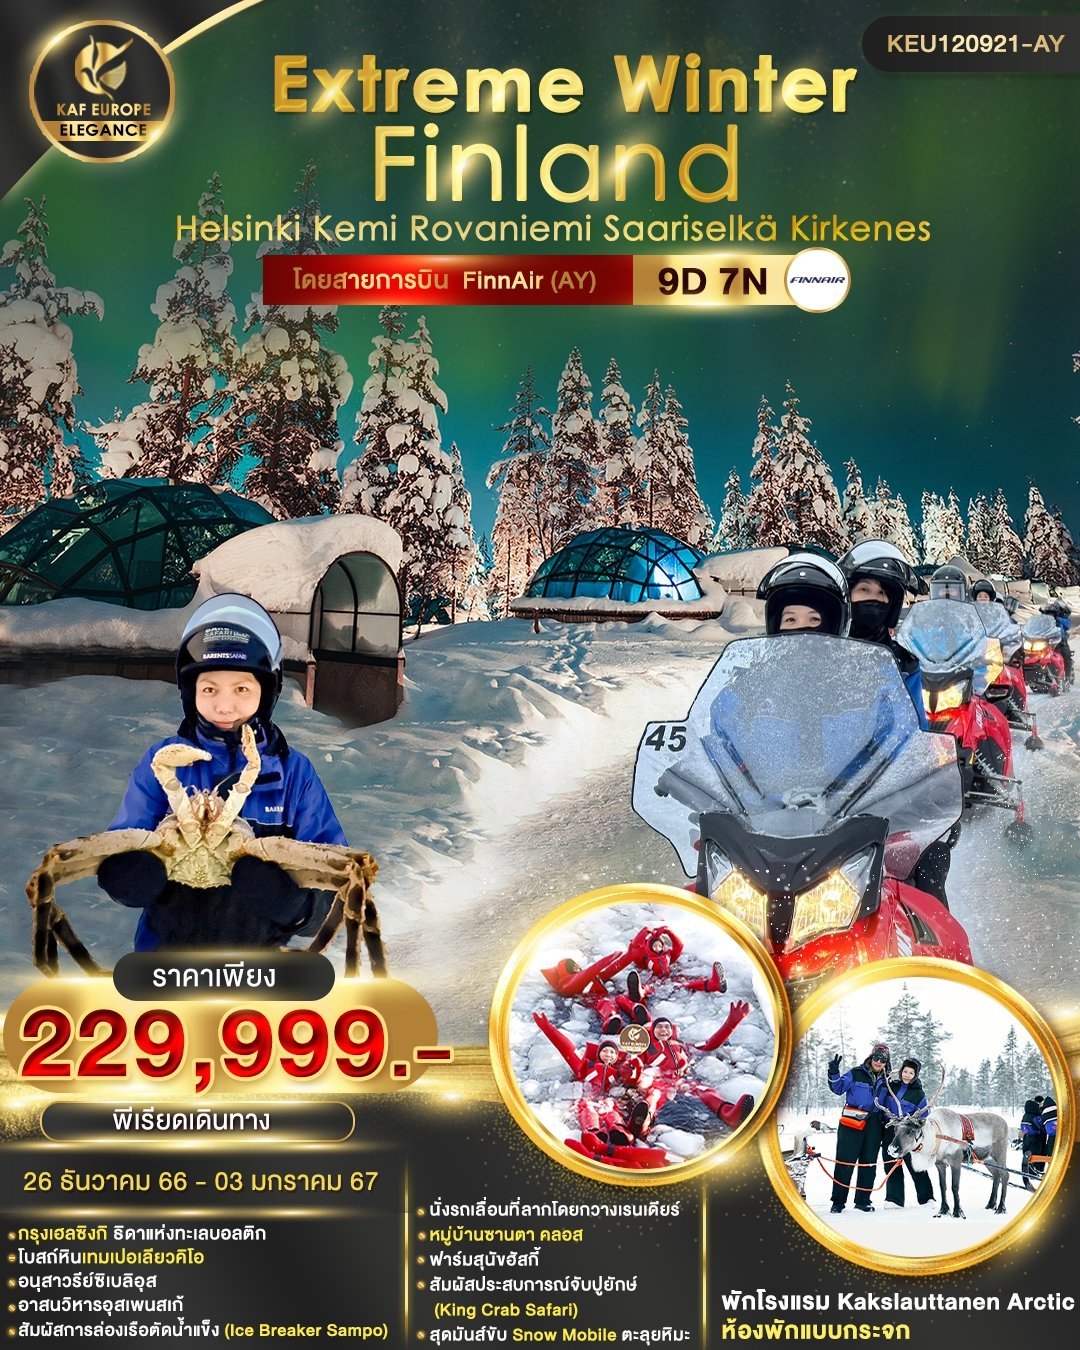 ทัวร์ฟินแลนด์ Extreme Winter Finland 9D 7N By AY (KAF)